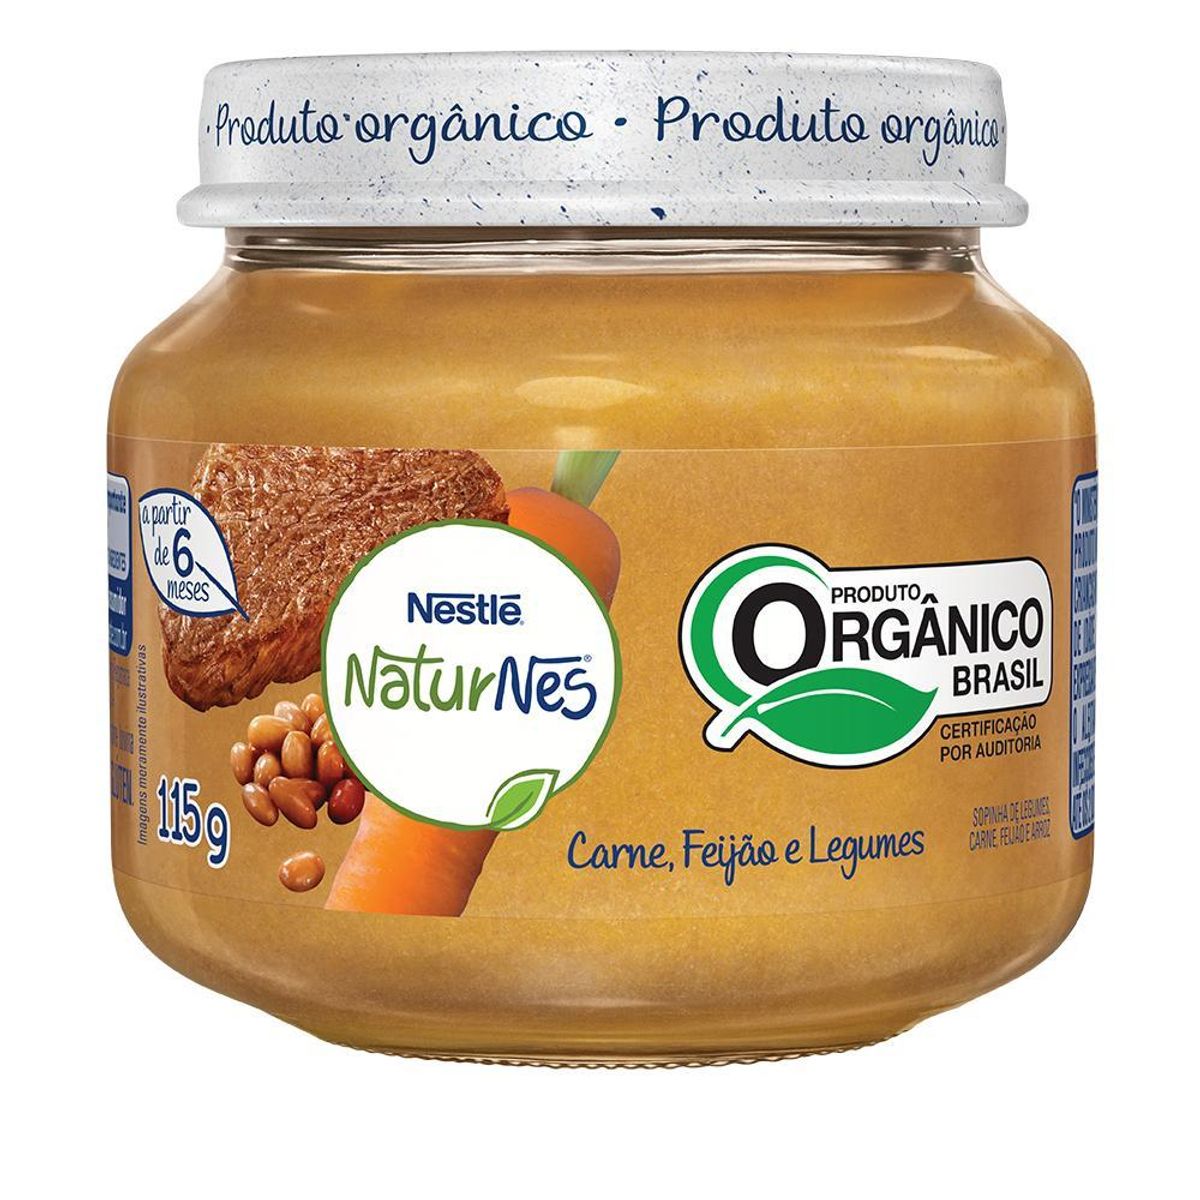 Papinha Orgânica Nestlé Naturnes Carne, Feijão e Legumes 115g